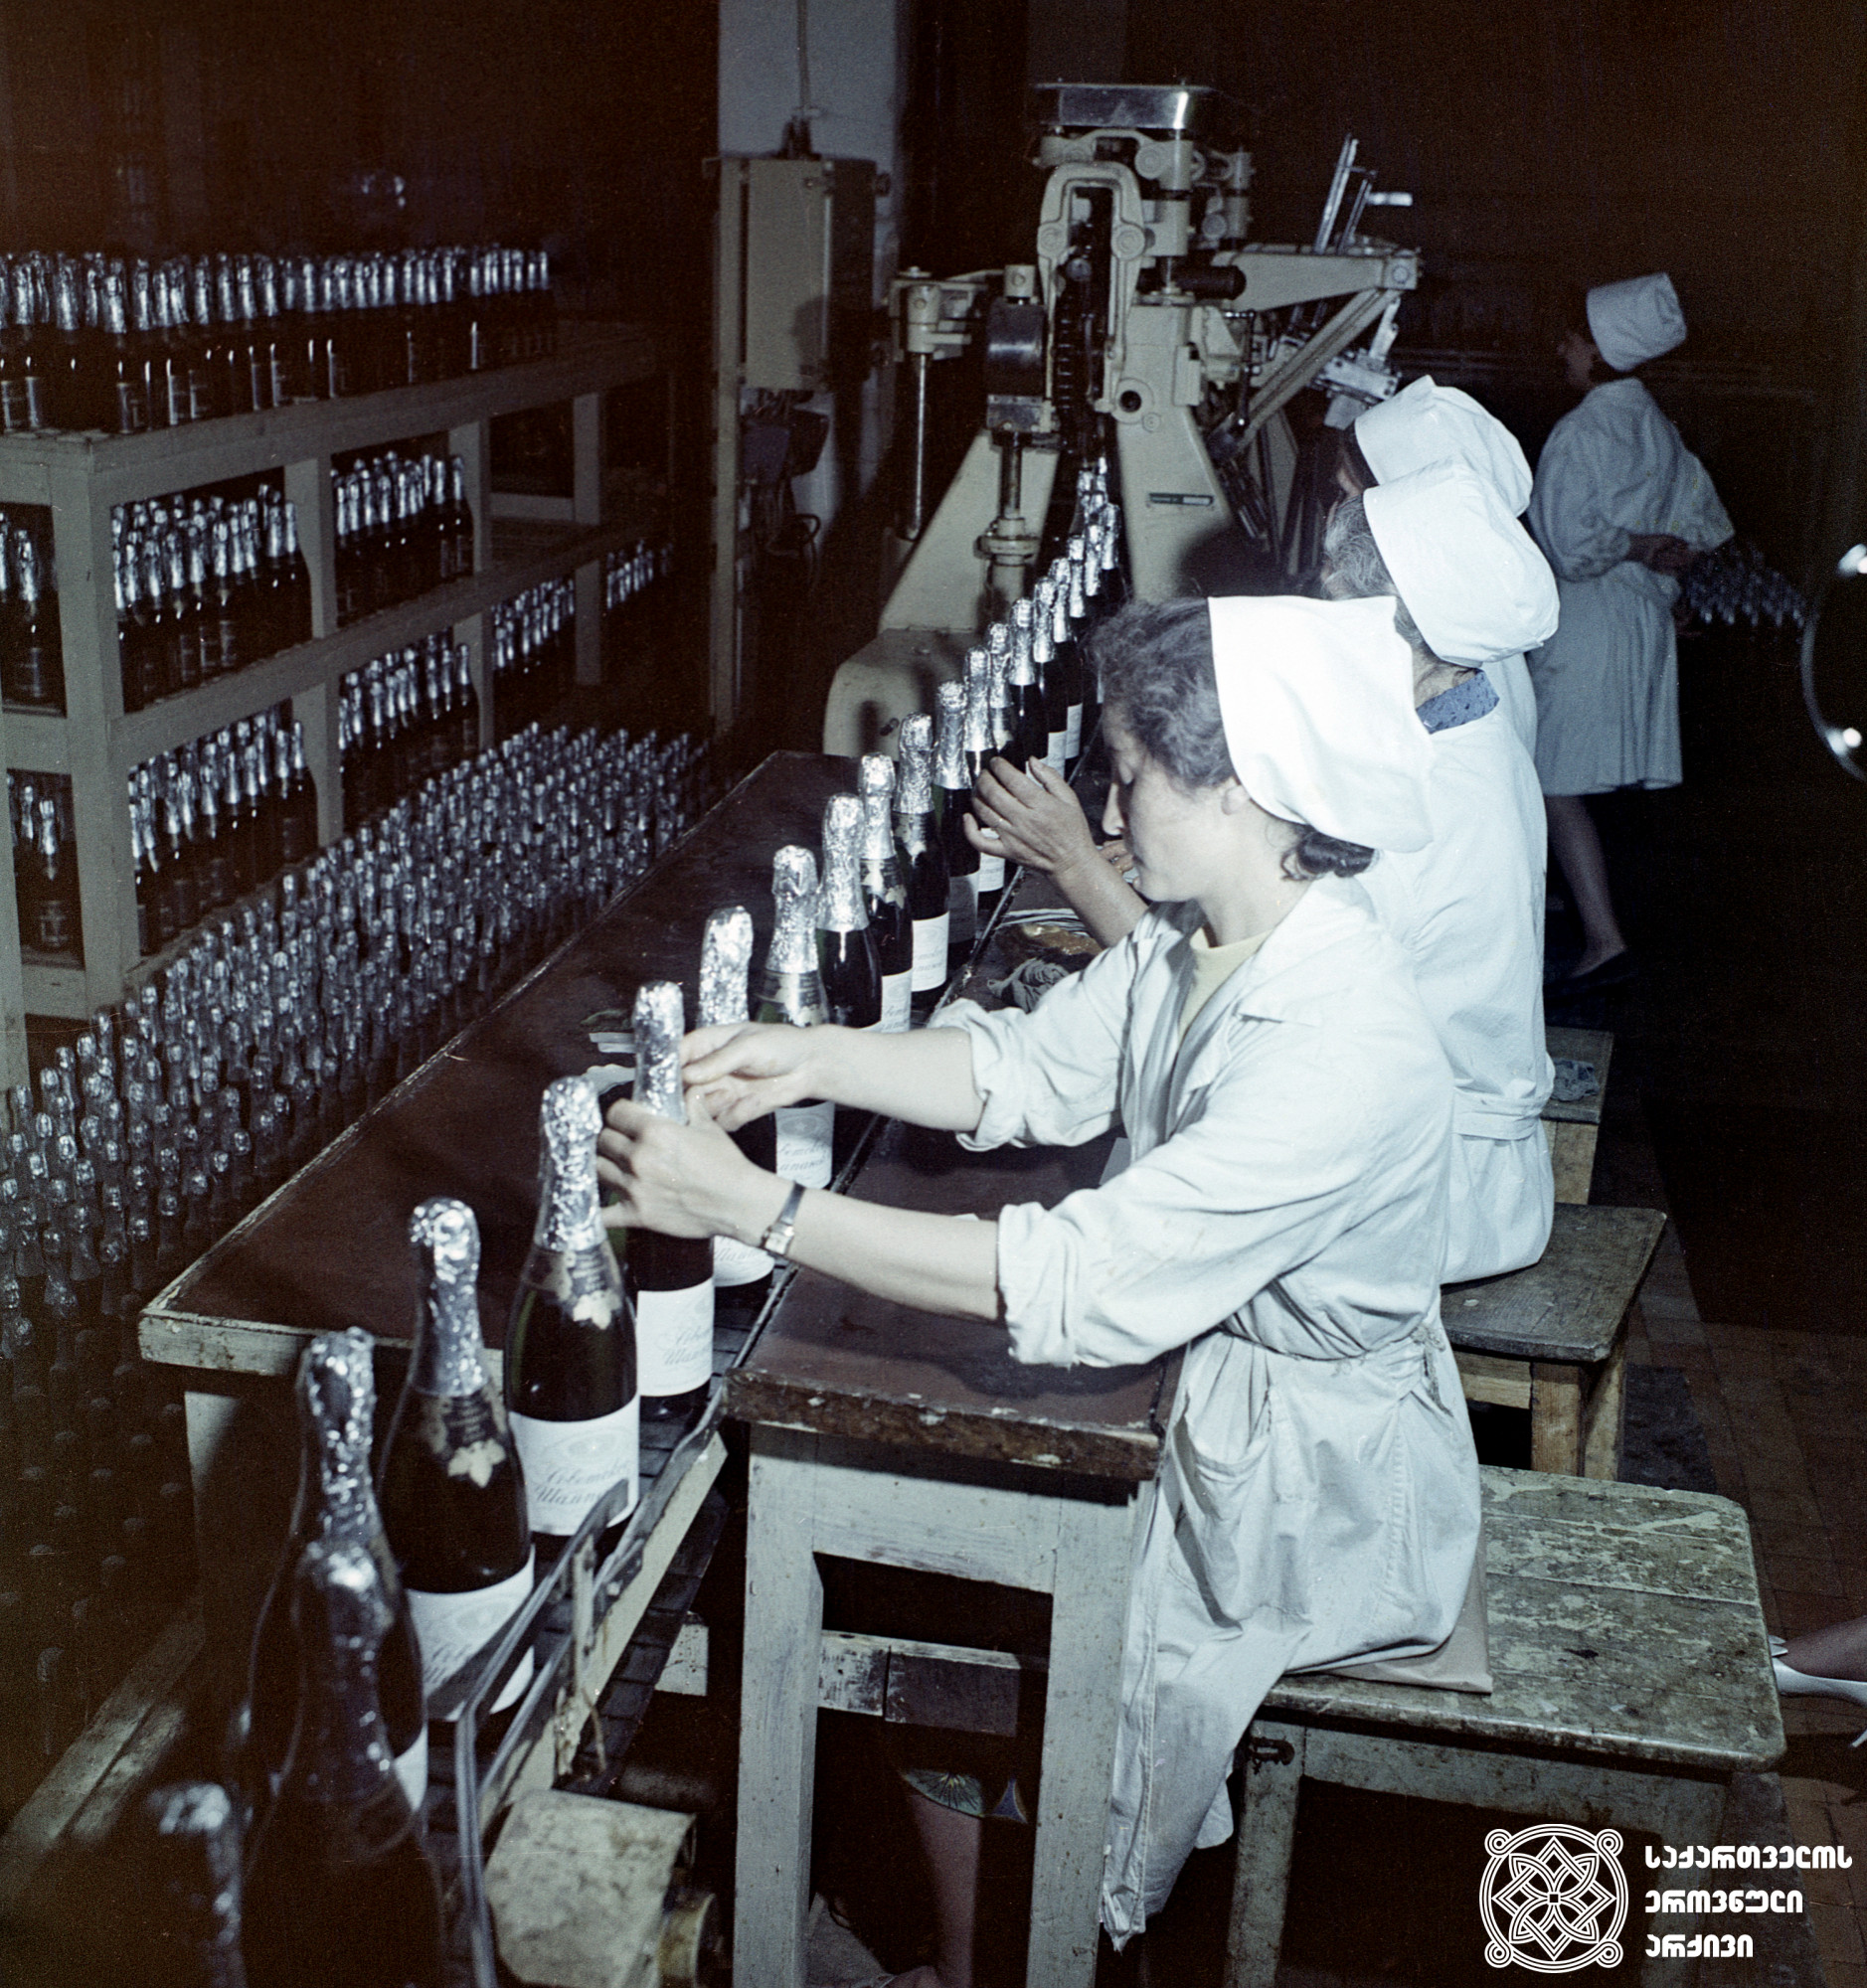 კონვეირი შამპანურის ქარხანაში <br>
1971 წელი <br>
ფოტო: პ. ოდიკაძე <br>
Conveir in champagne factory <br>
Photo by P. Odikadze <br>
1971